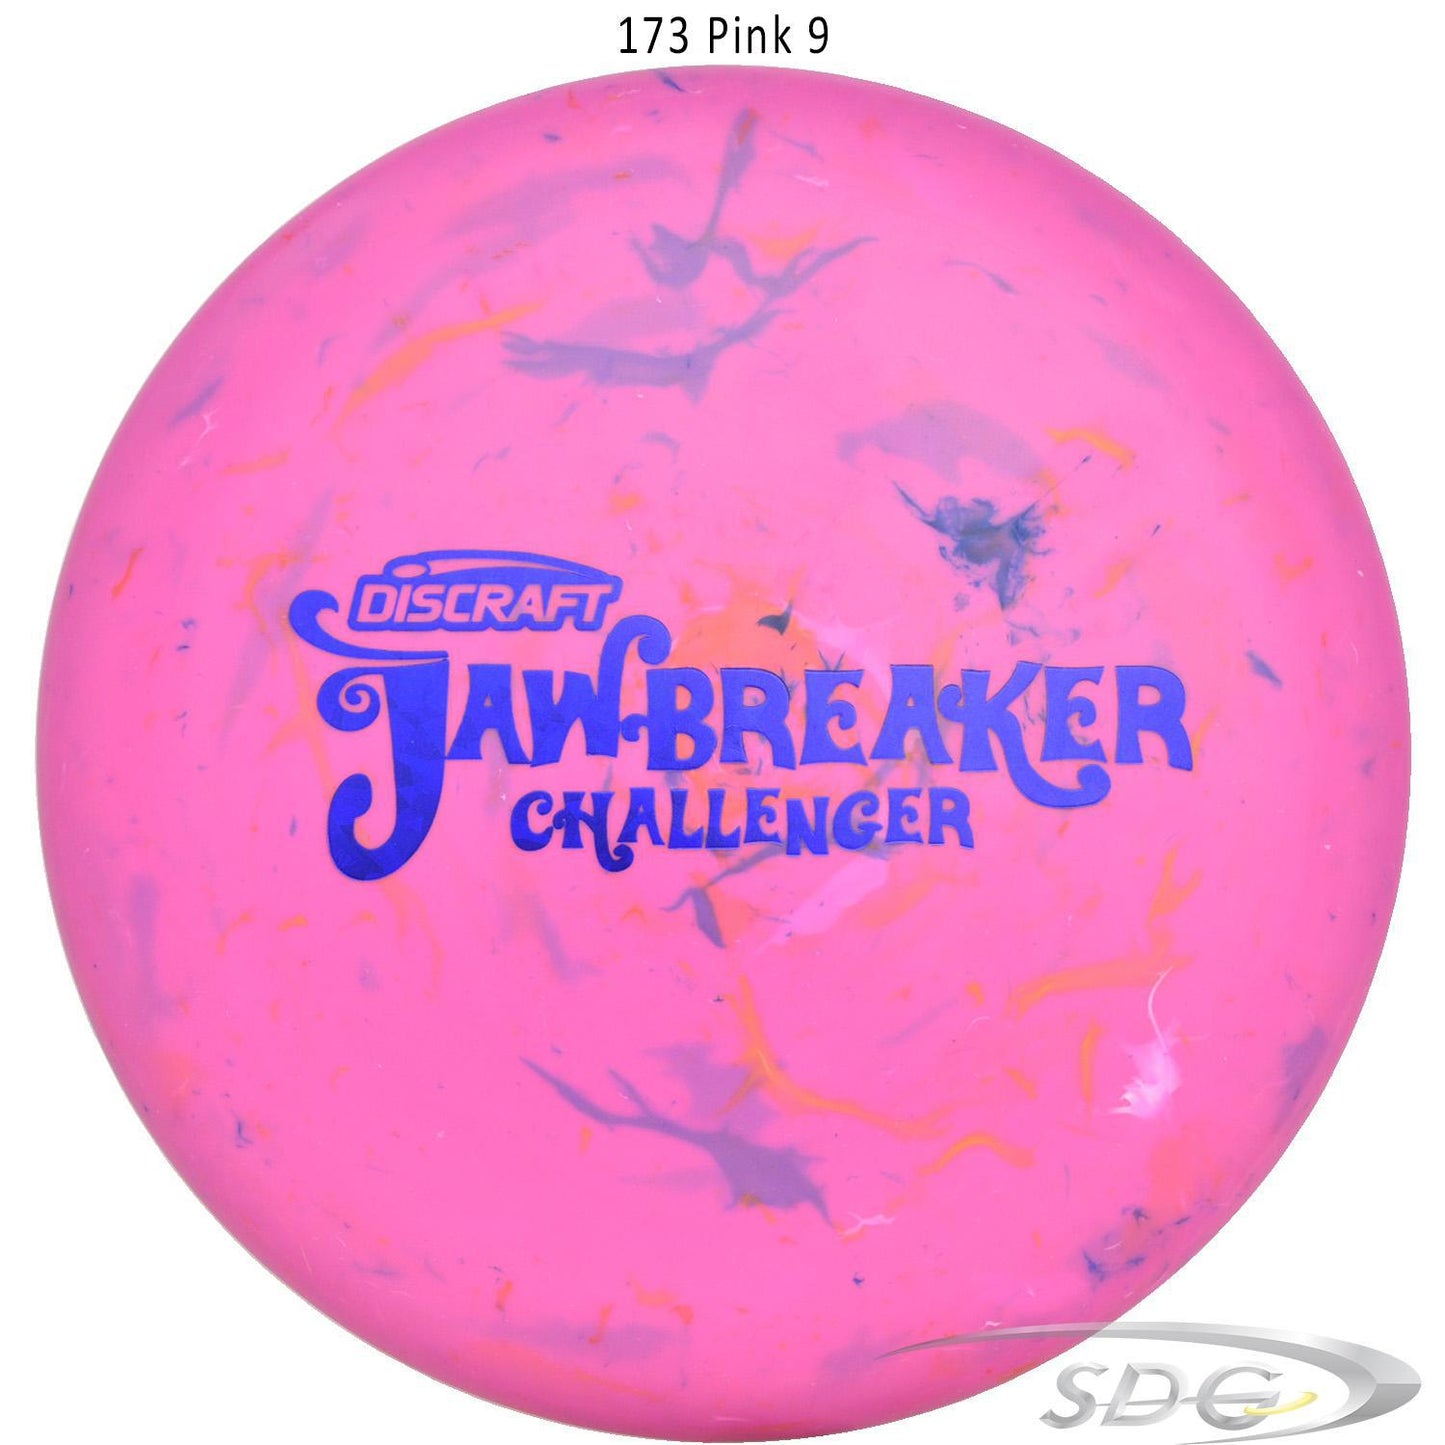 discraft-jawbreaker-challenger-disc-golf-putter 173 Pink 9 